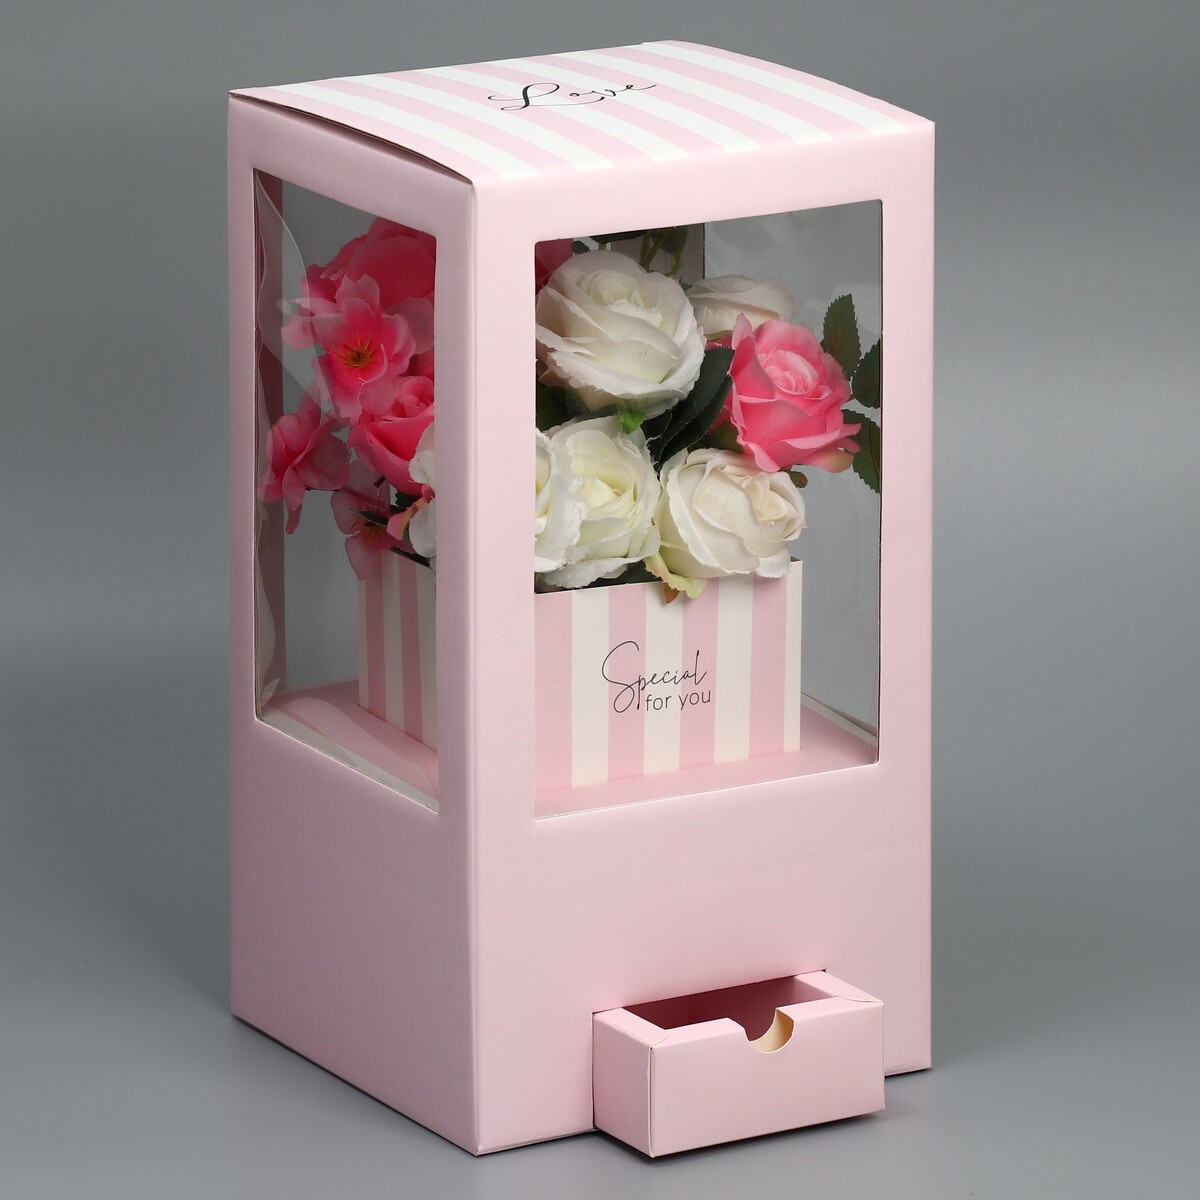 Коробка подарочная для цветов с вазой из мгк складная, упаковка, коробка для ов с вазой и pvc окнами складная 23 х 30 х 23 см белый